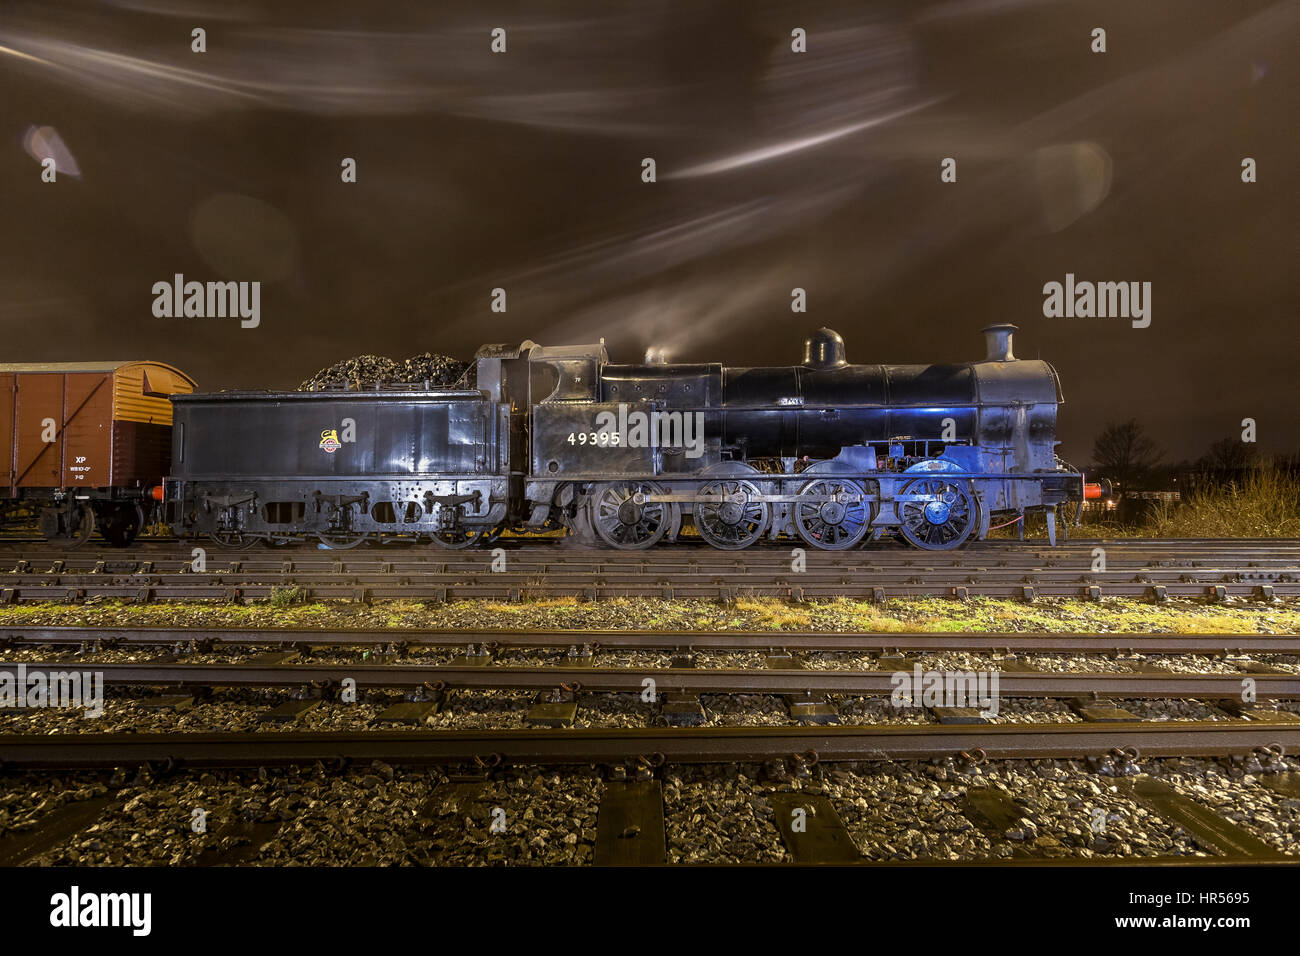 Des prises de nuit de locomotives à vapeur au siège de l'enterrer East Lancashire Railway. nightshoot LNWR survivant seule 0-8-0, classe G2 Super [ou "D" Banque D'Images